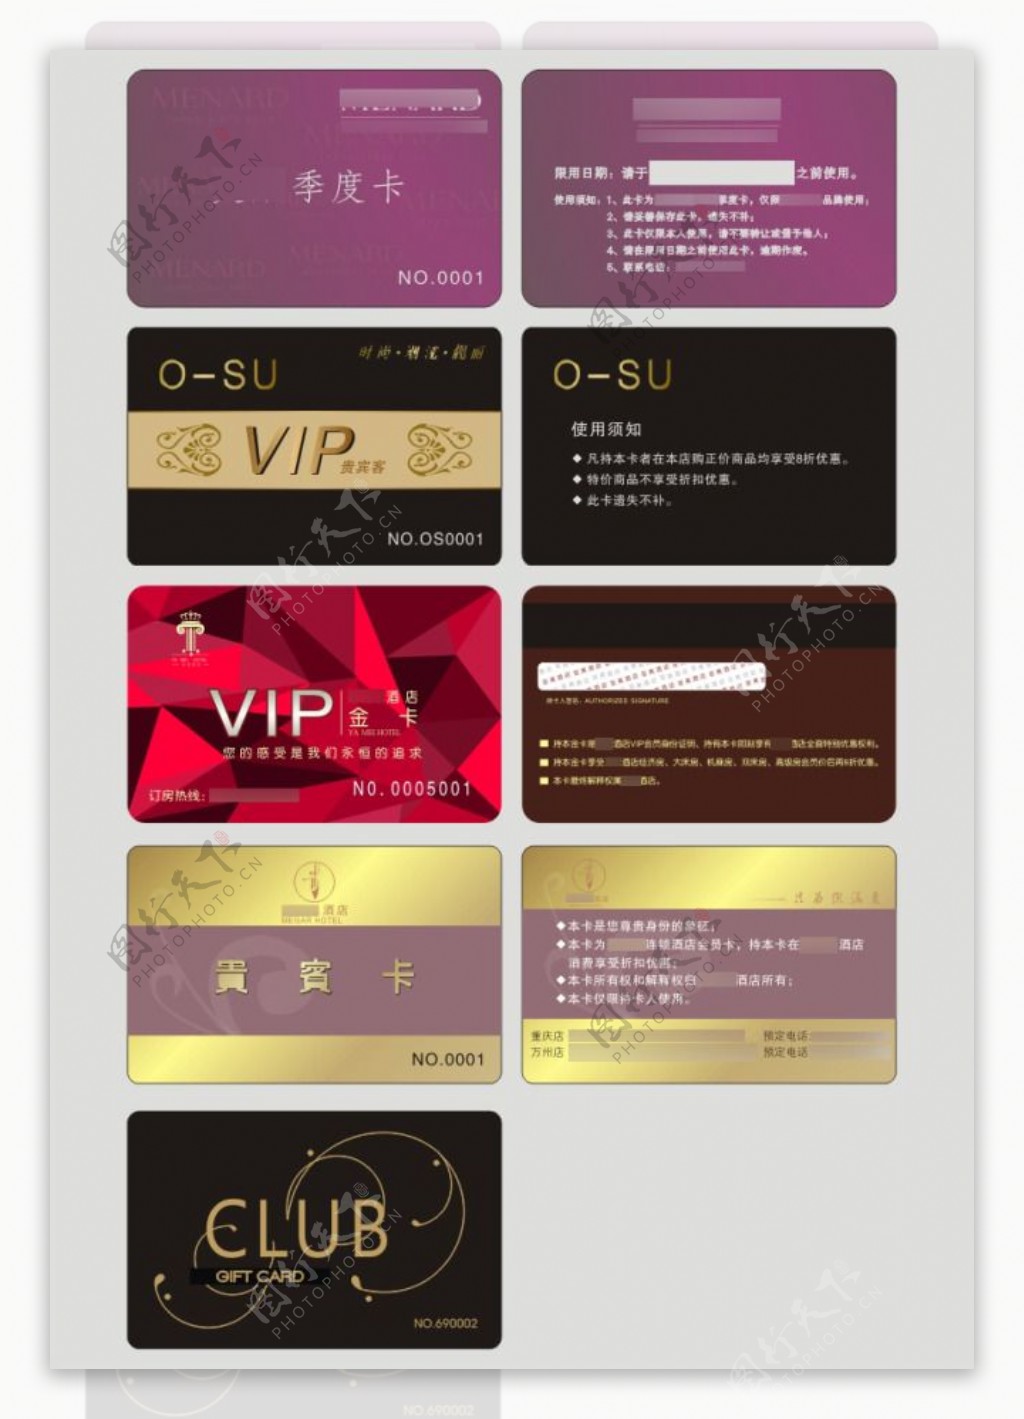 连锁酒店VIP贵宾卡会员卡设计CDR